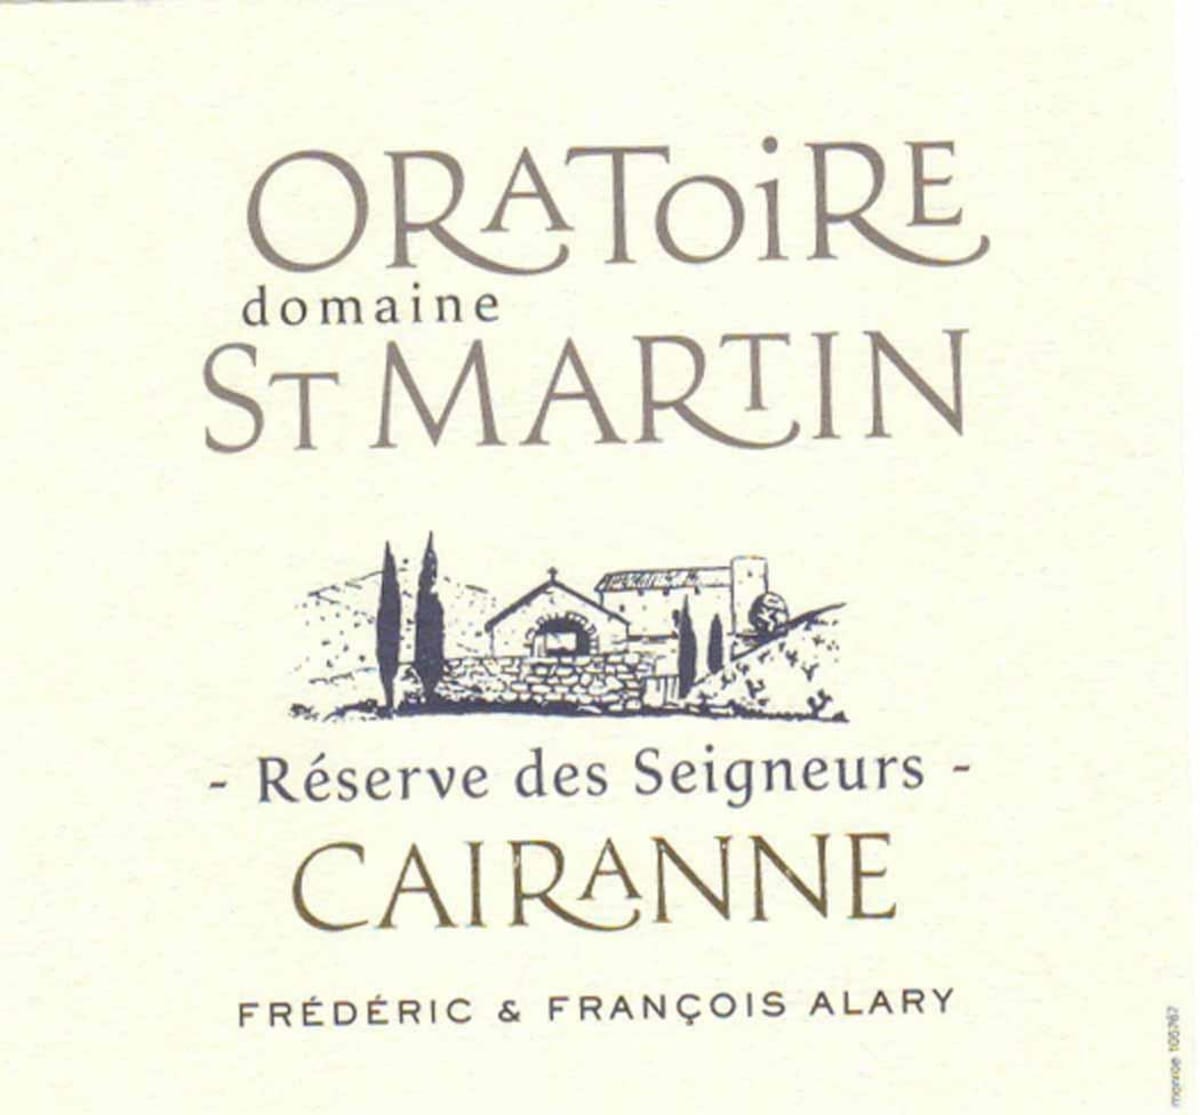 Dom. Oratoire St Martin Cairanne Reserve des Seigneurs Blanc 2008 Front Label